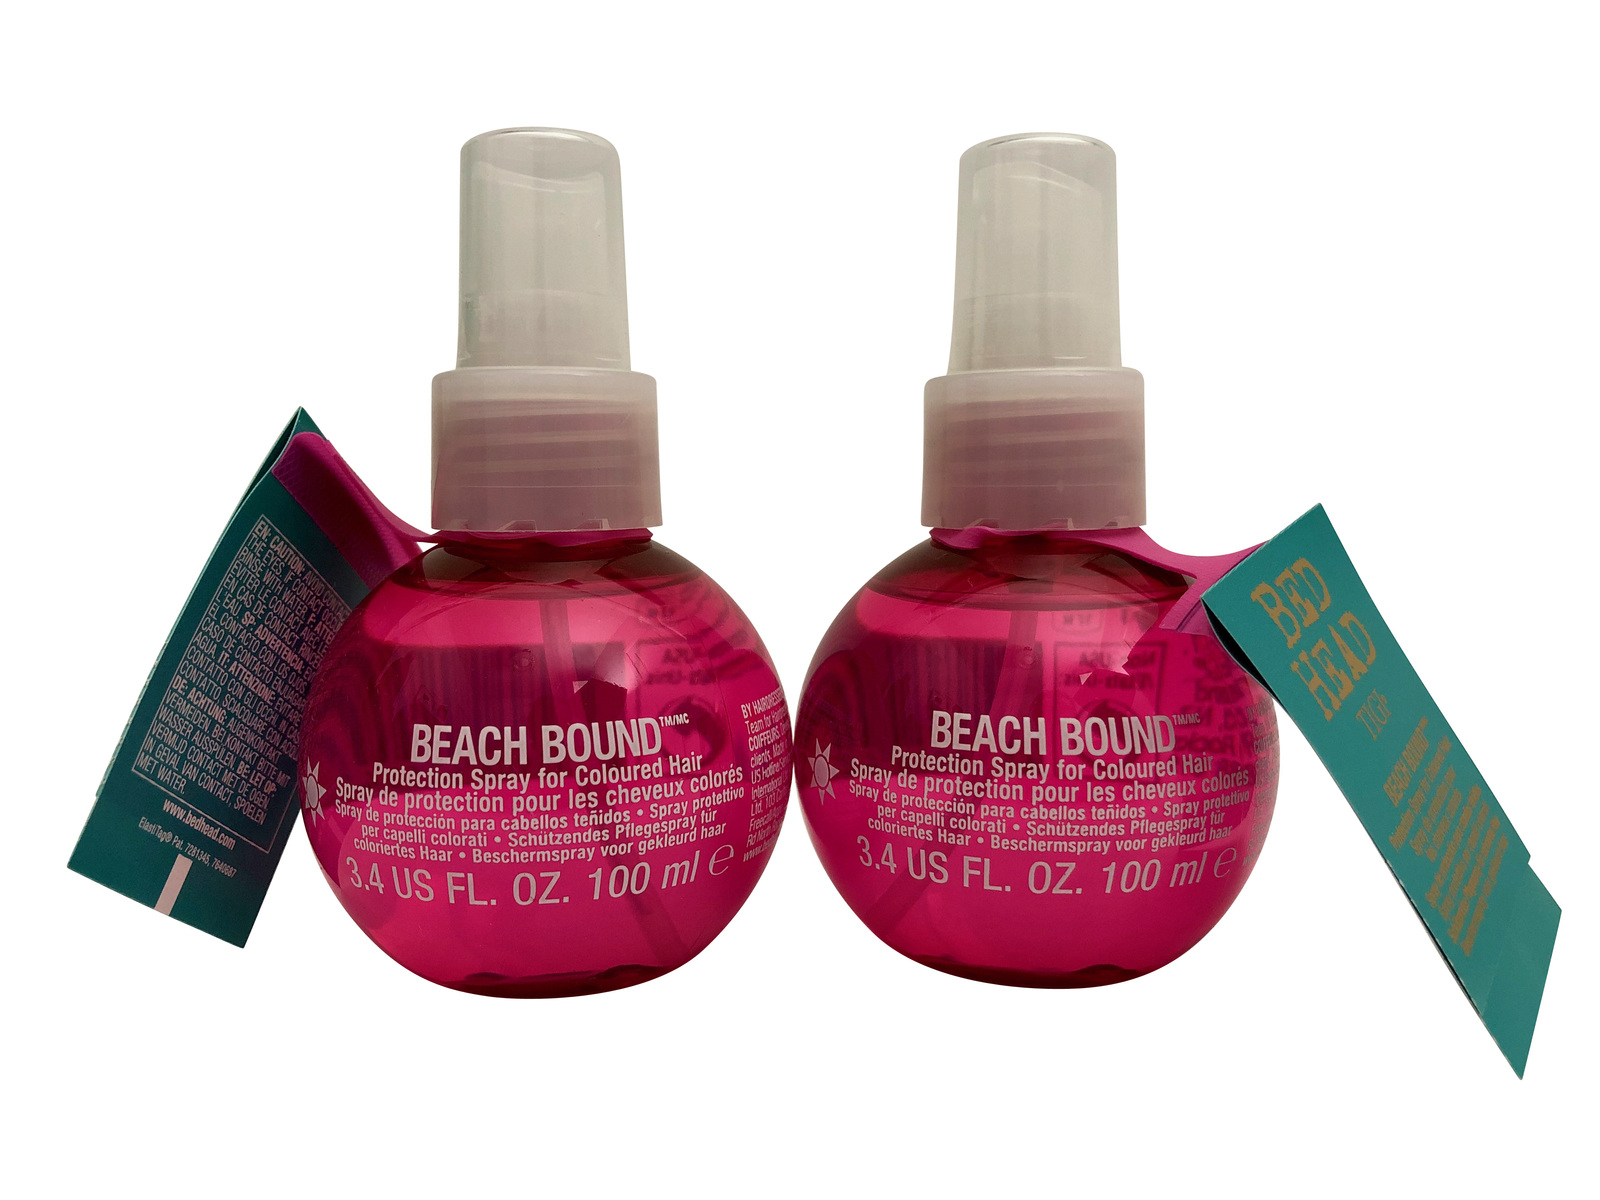 TIGI Bed Head Beach Bound Protections Spray Color Treated Hair Set 3.4 oz. Each - $14.95